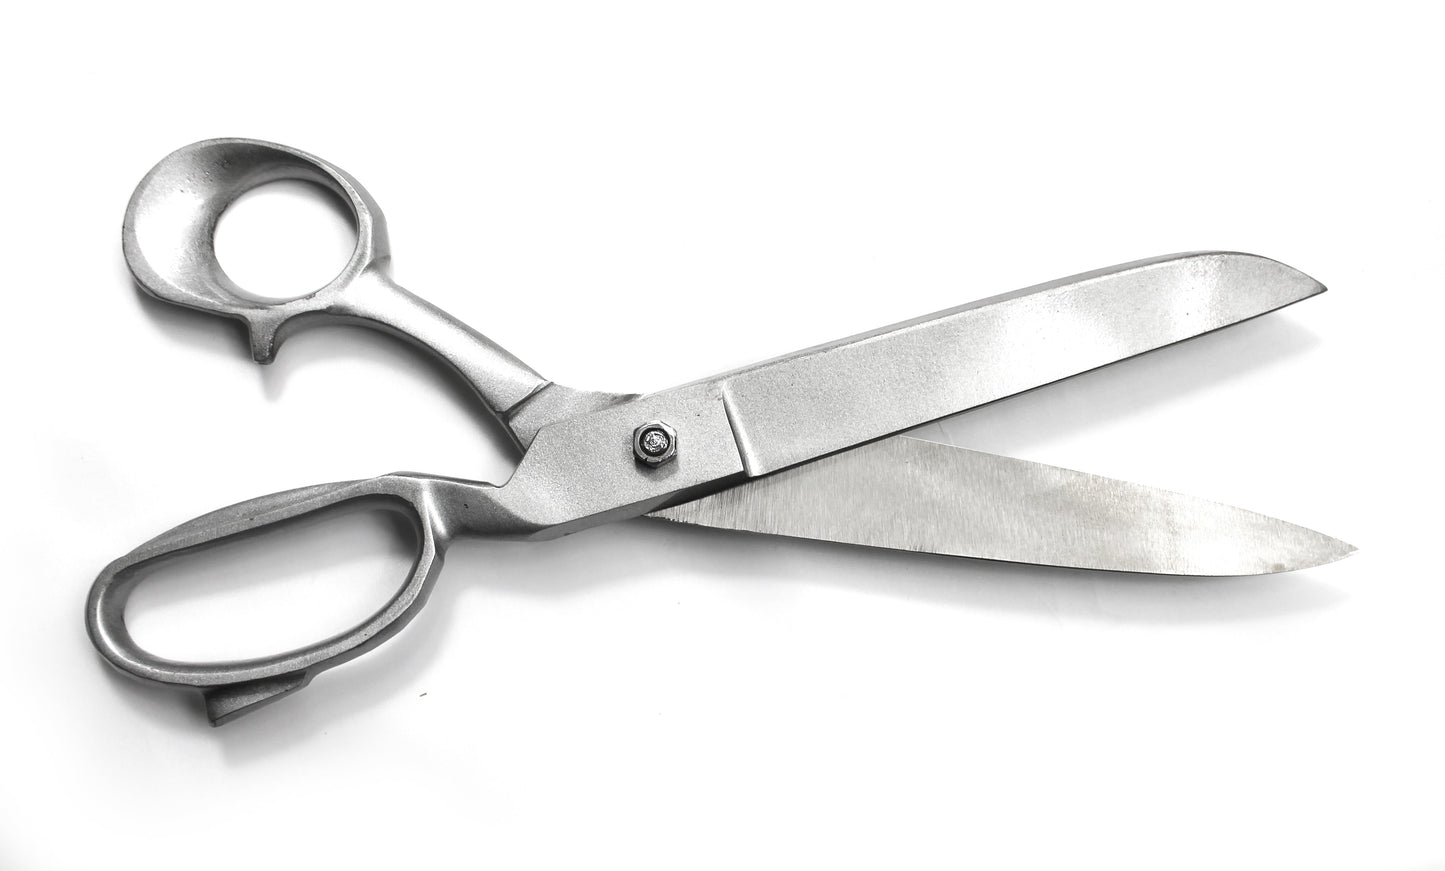 10" Heavy Duty Tailor Stainless Steel Shears Scissors